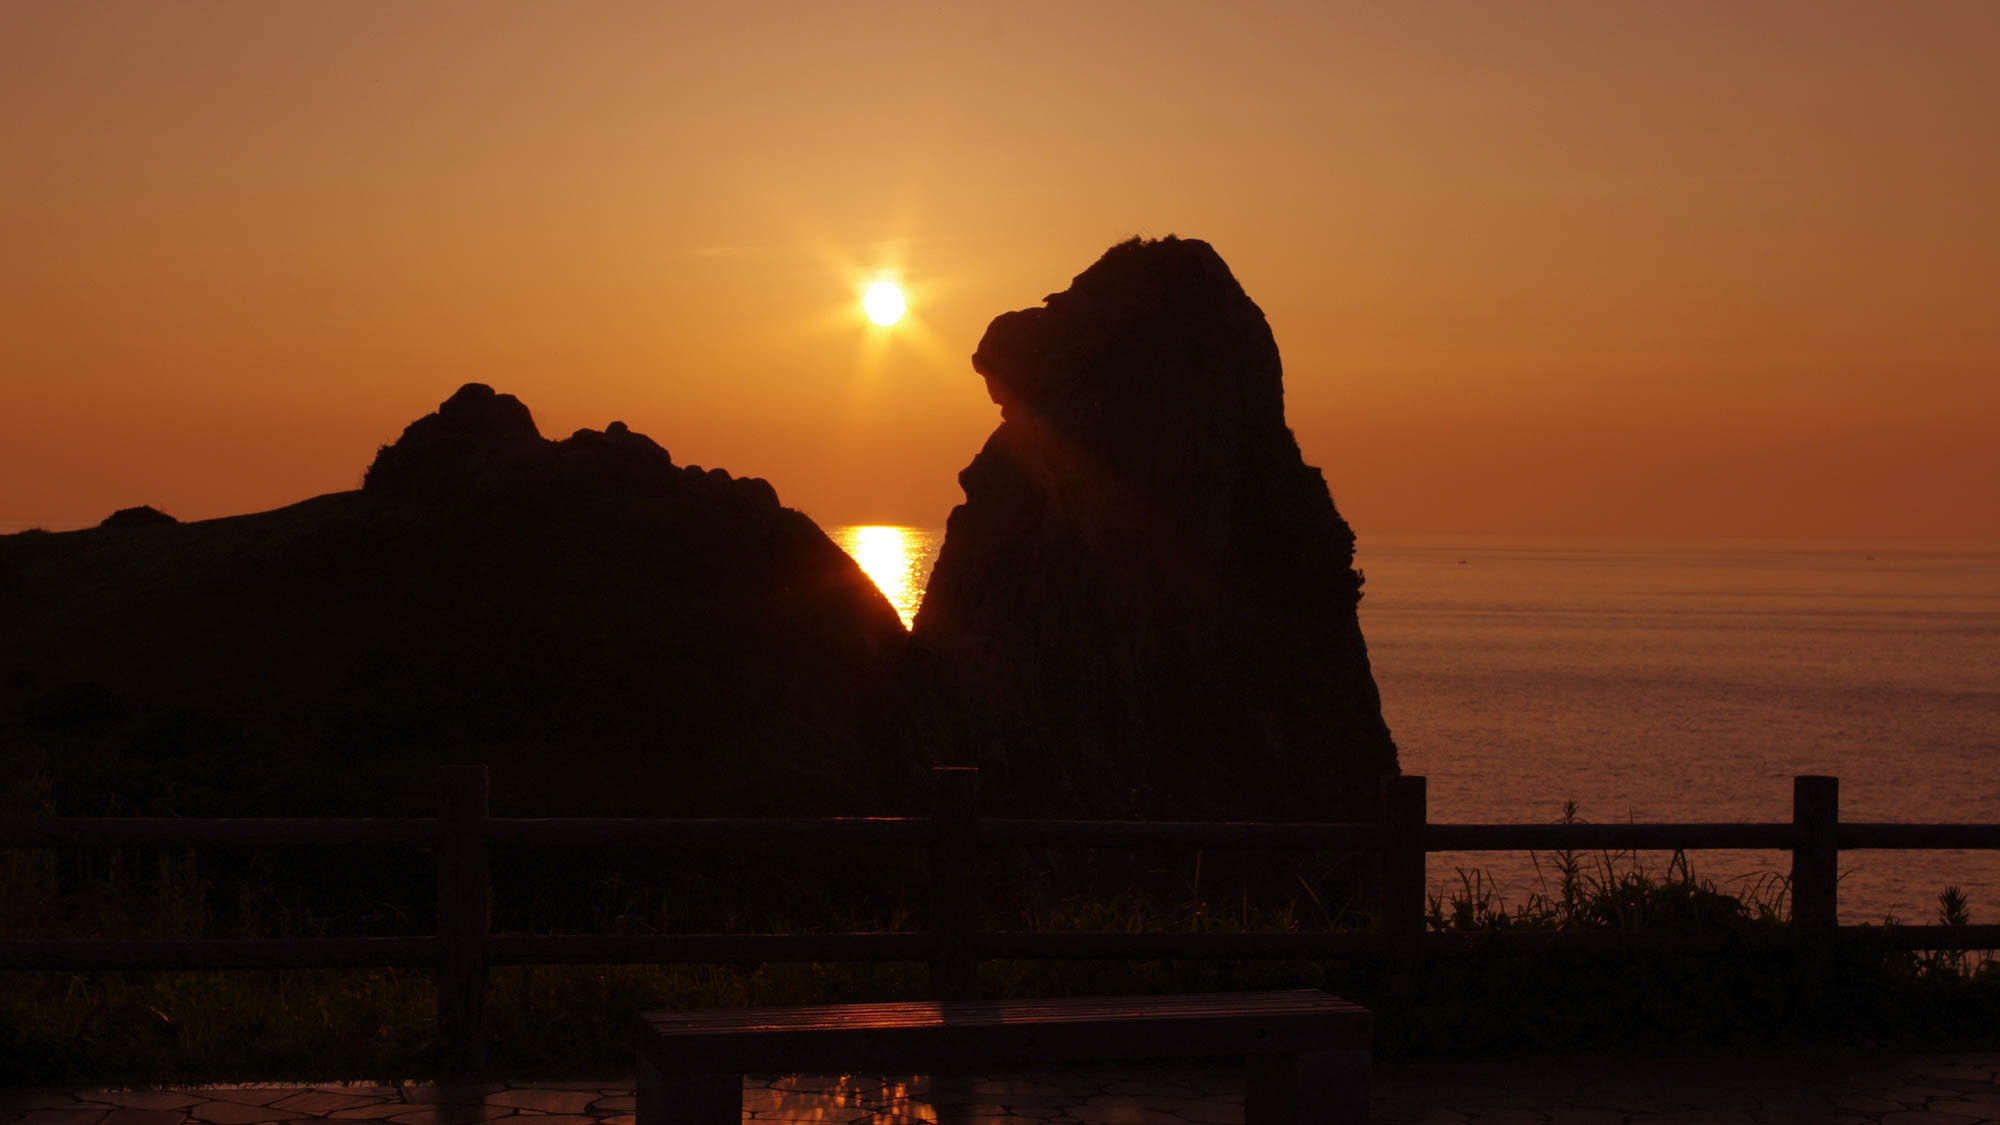 *【猿岩】高さ45ｍの巨大な猿のユニークな形はもちろん、岩越に見える美しい夕陽の絶景も注目。